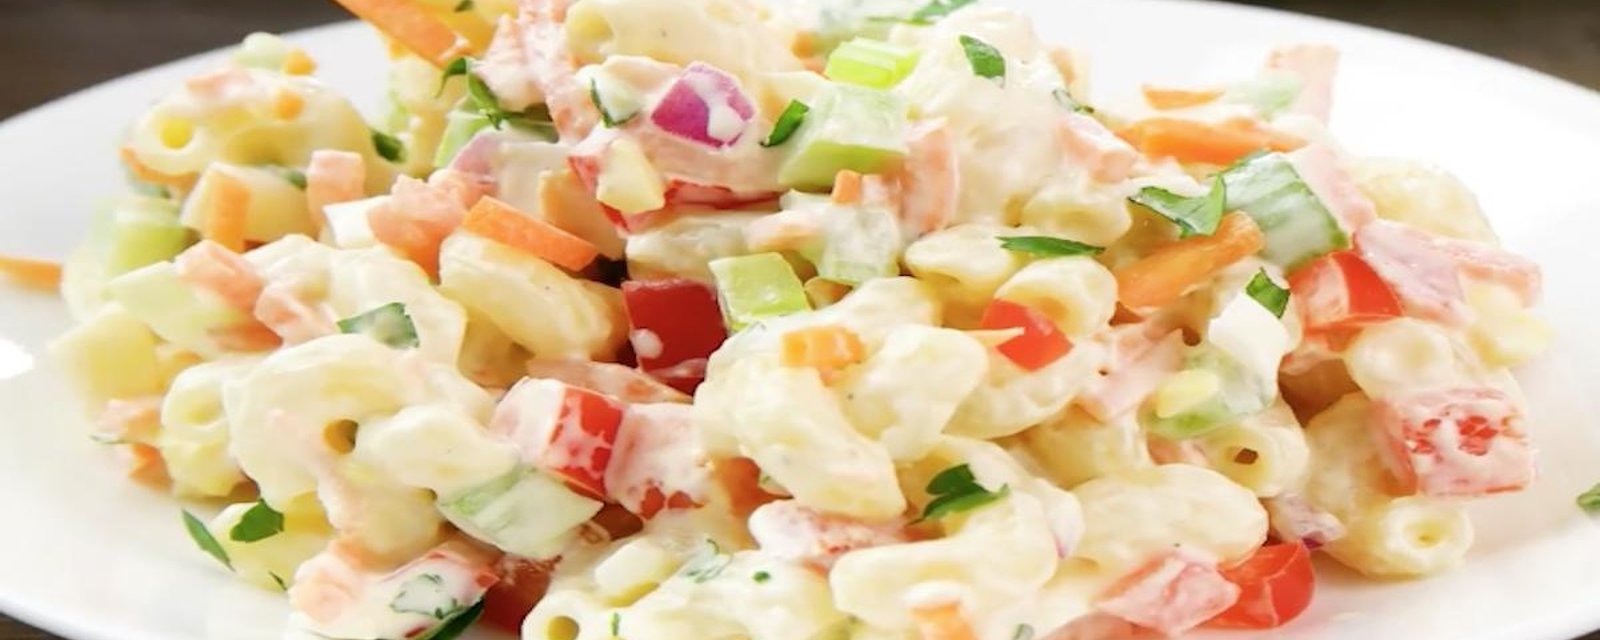 Salade froide de macaroni colorée à souhait